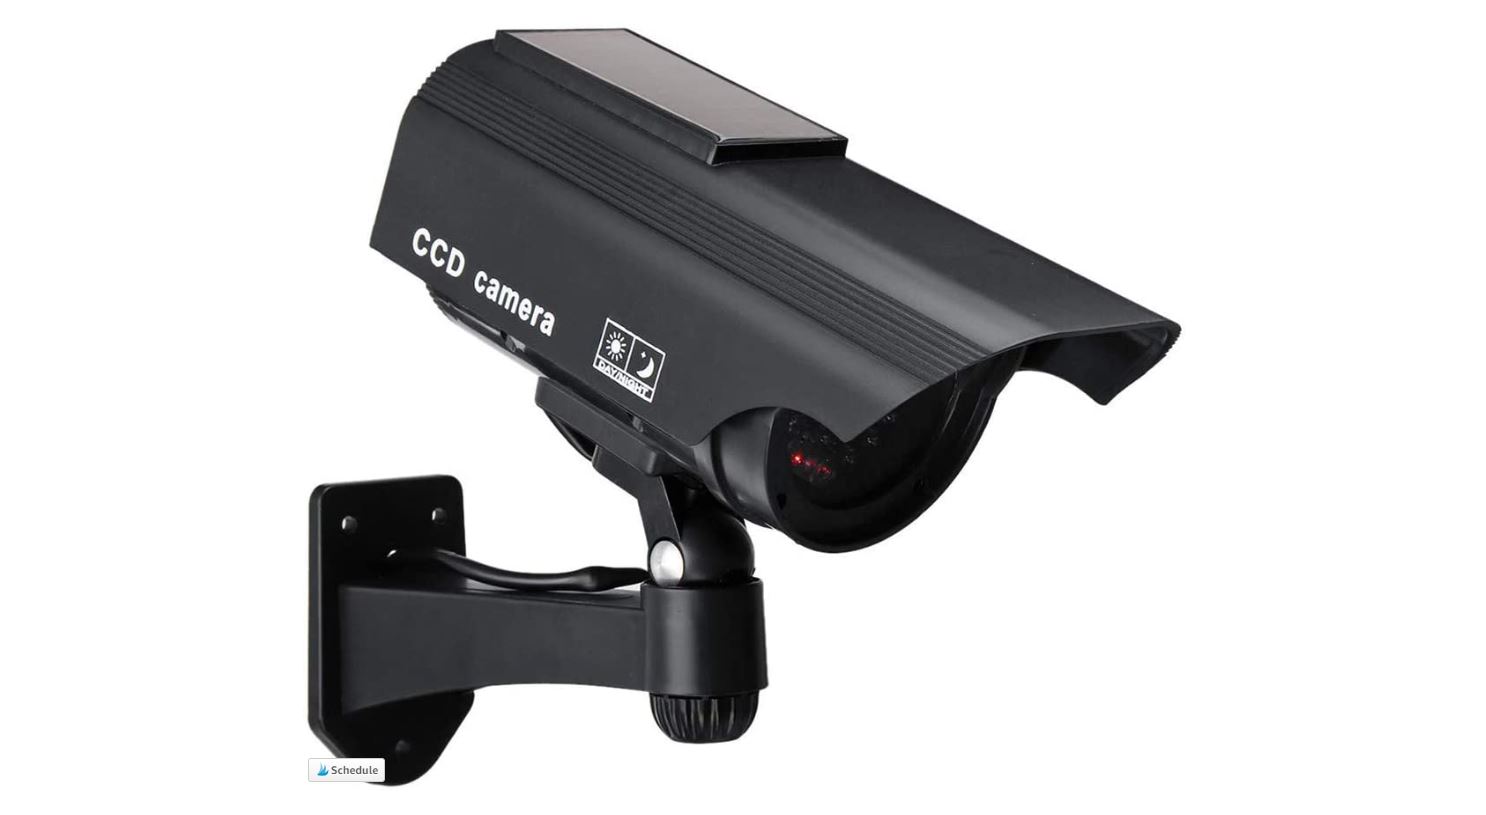 dummy video surveillance cameras